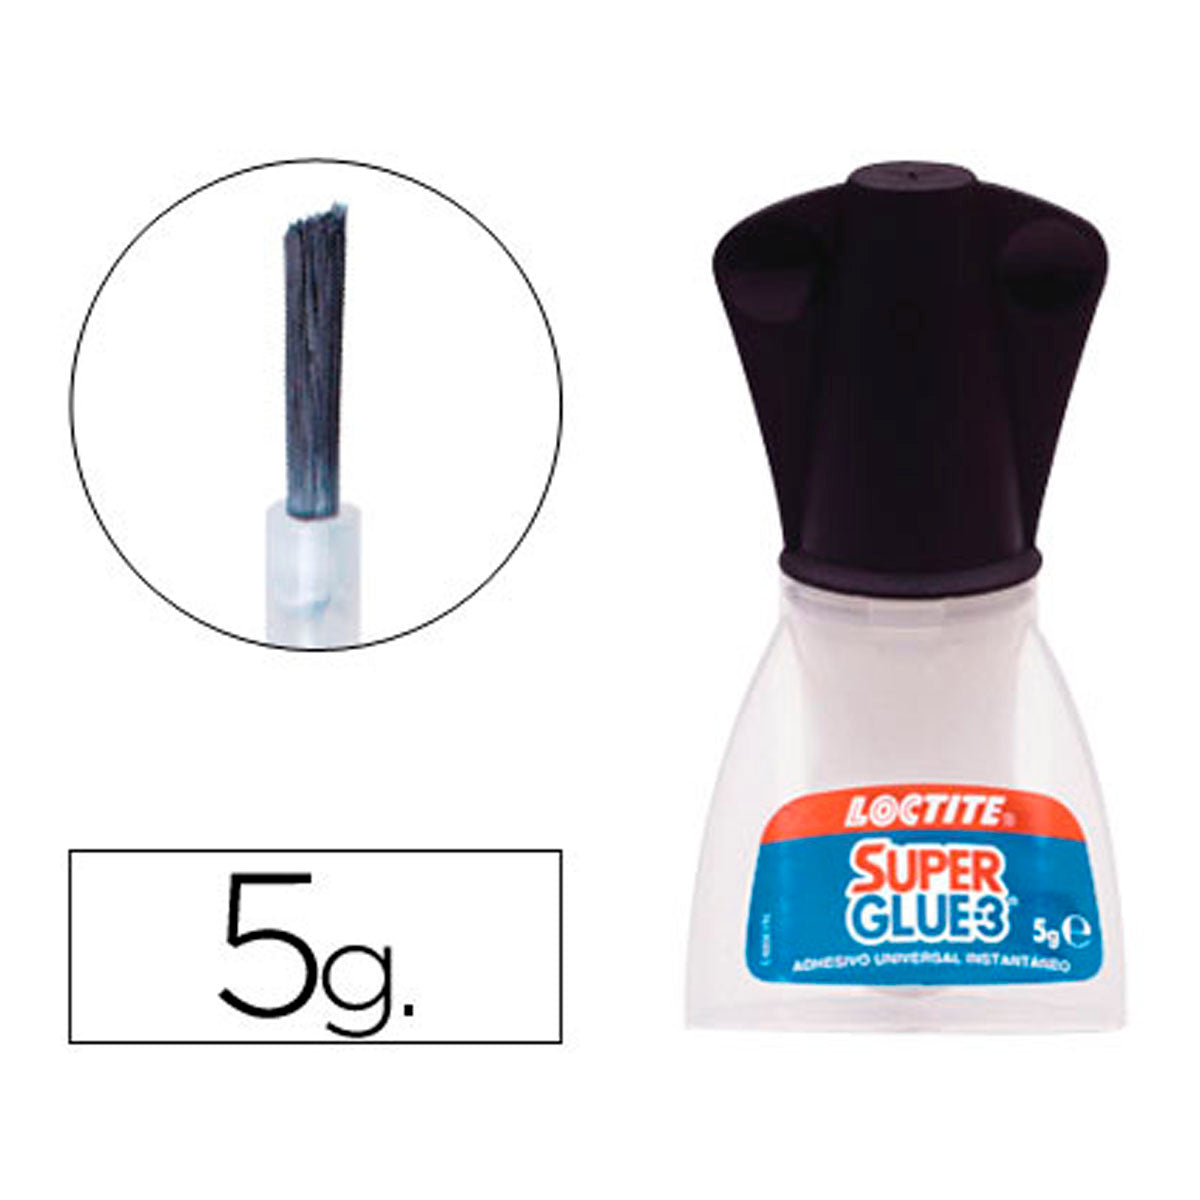 LOCTITE - Pegamento Loctite Super Glue-3  5 gr Aplicador de Pincel Adhesivo Instantáneo